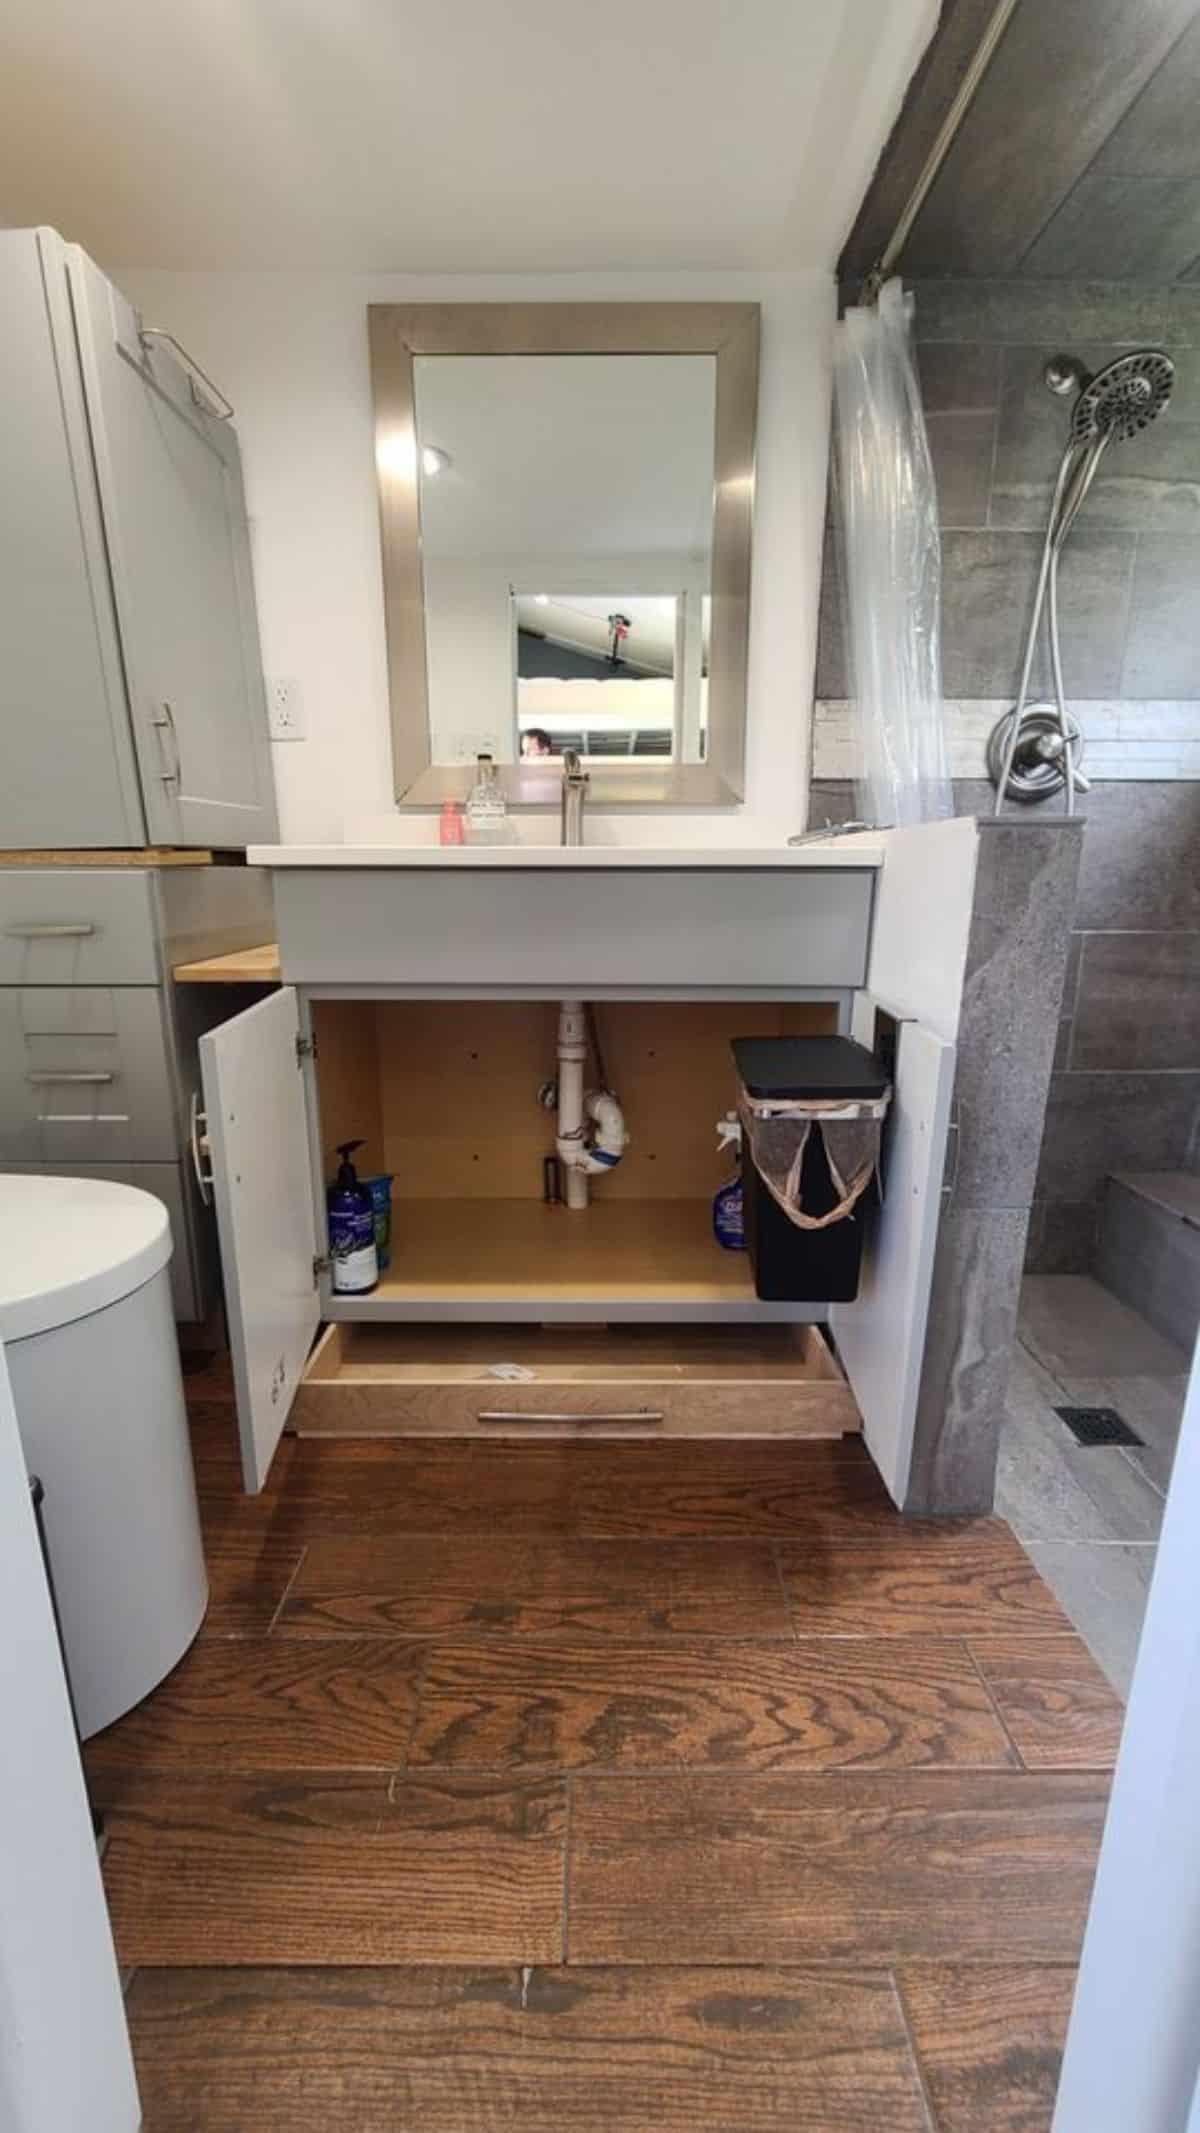 open doors on cabinet underneath bathroom sink